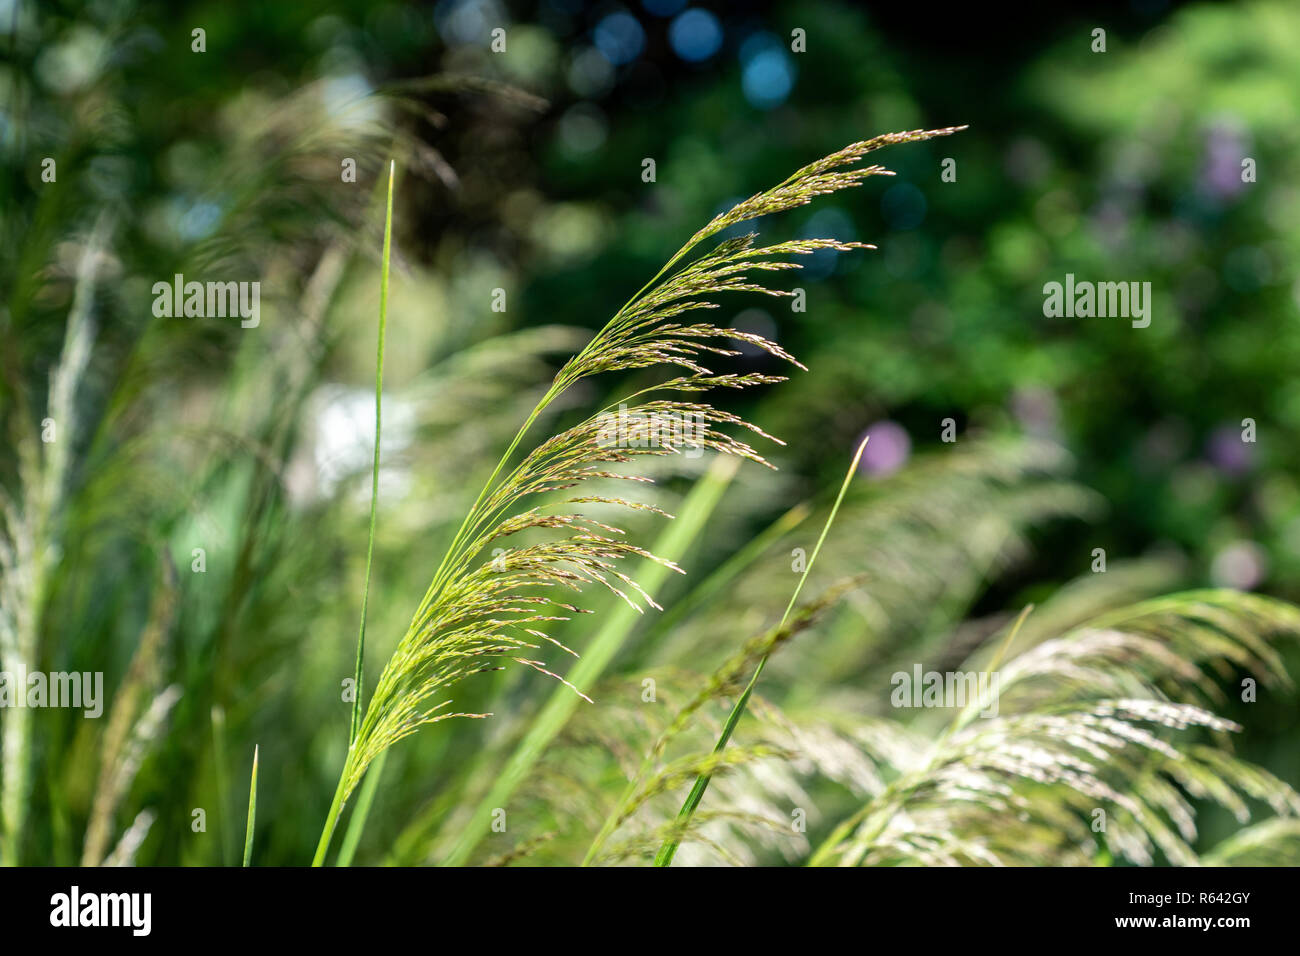 Chinesische Silber Gras, Miscanthus sinensis, Nahaufnahme mit verschwommenen Hintergrund Stockfoto